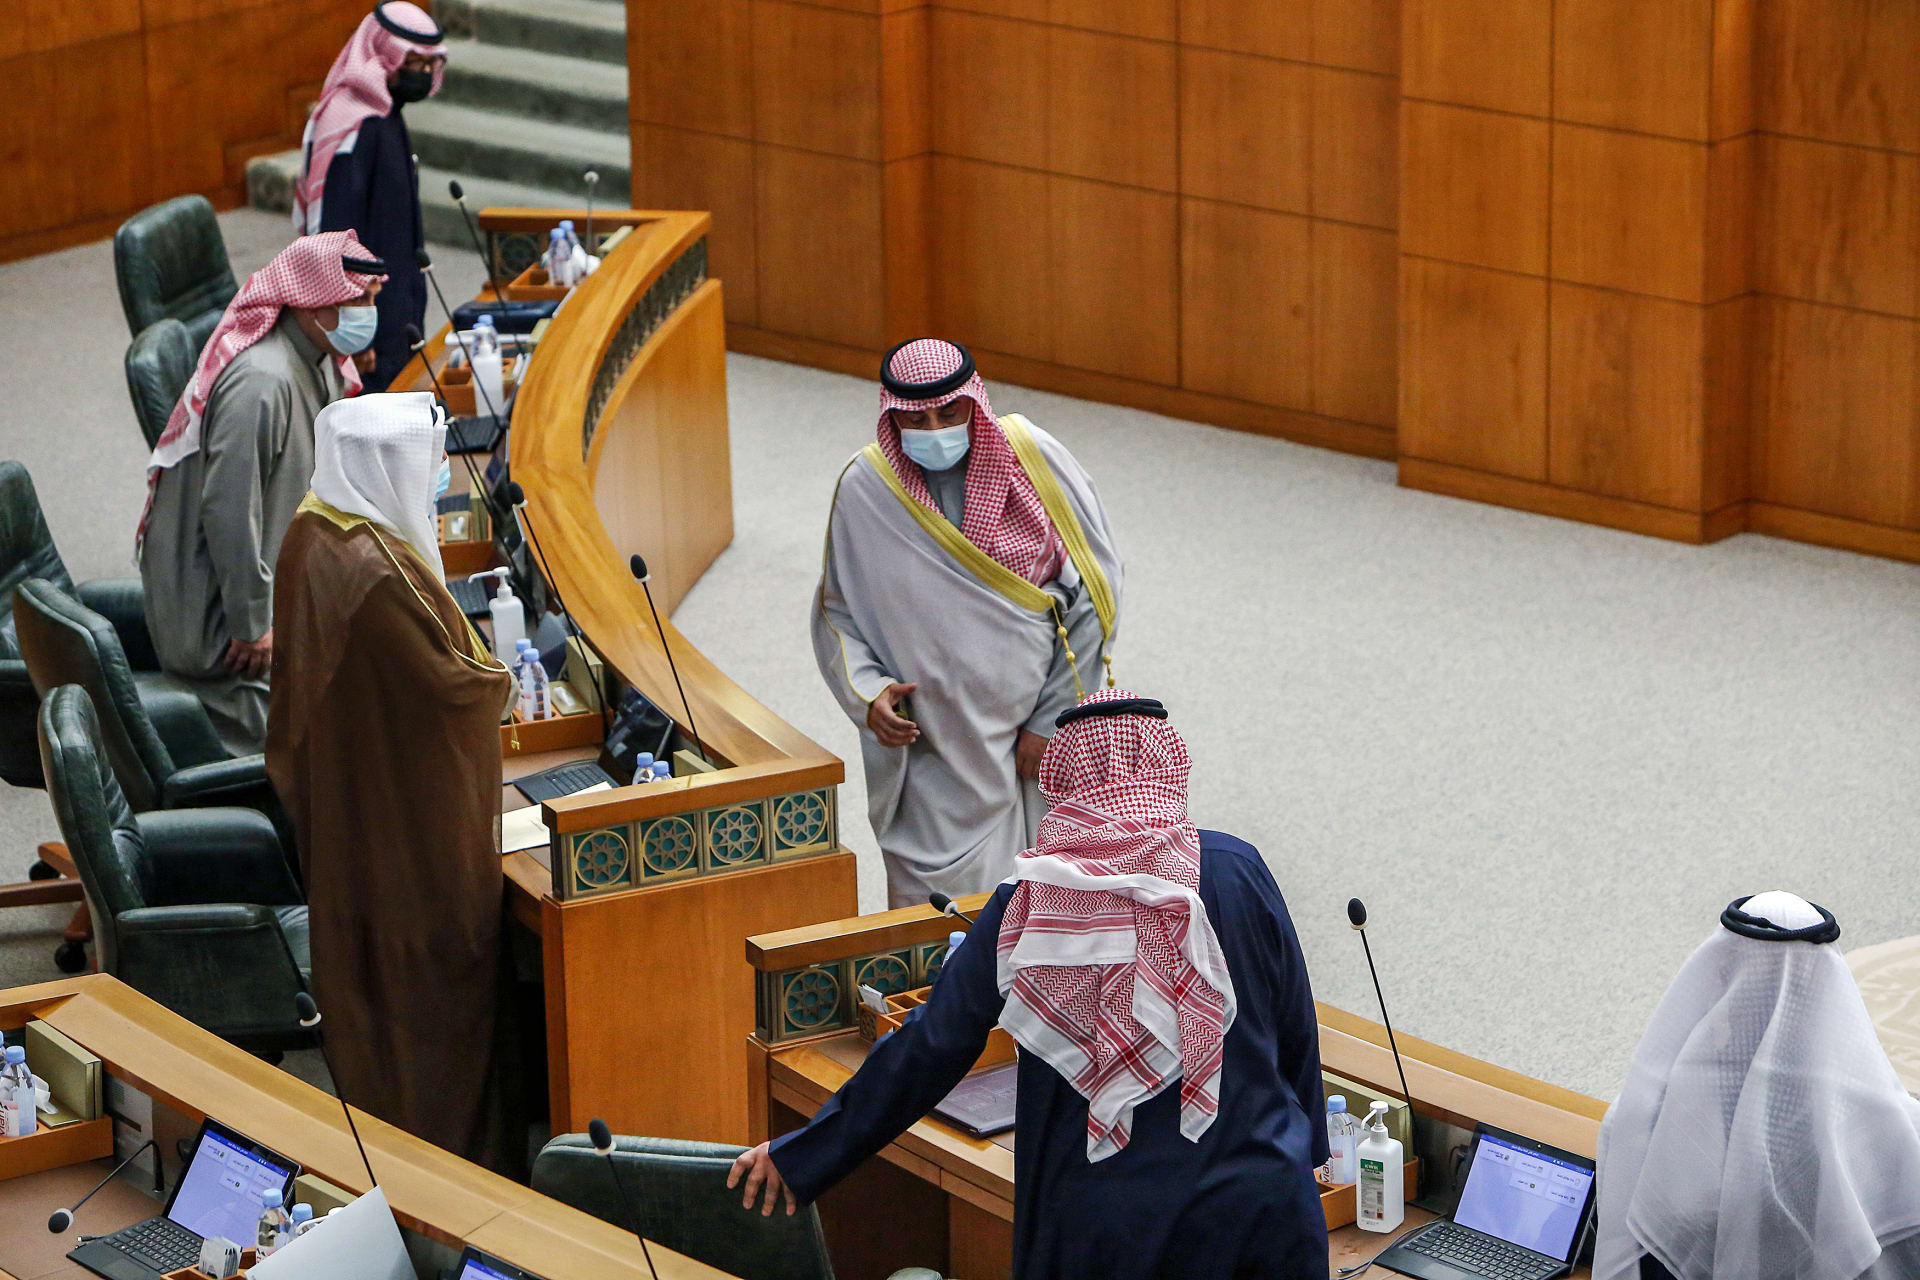 توجيه بسحب بلاغات ضد أعضاء بمجلس الامة الكويتي خالفوا إجراءات كورونا